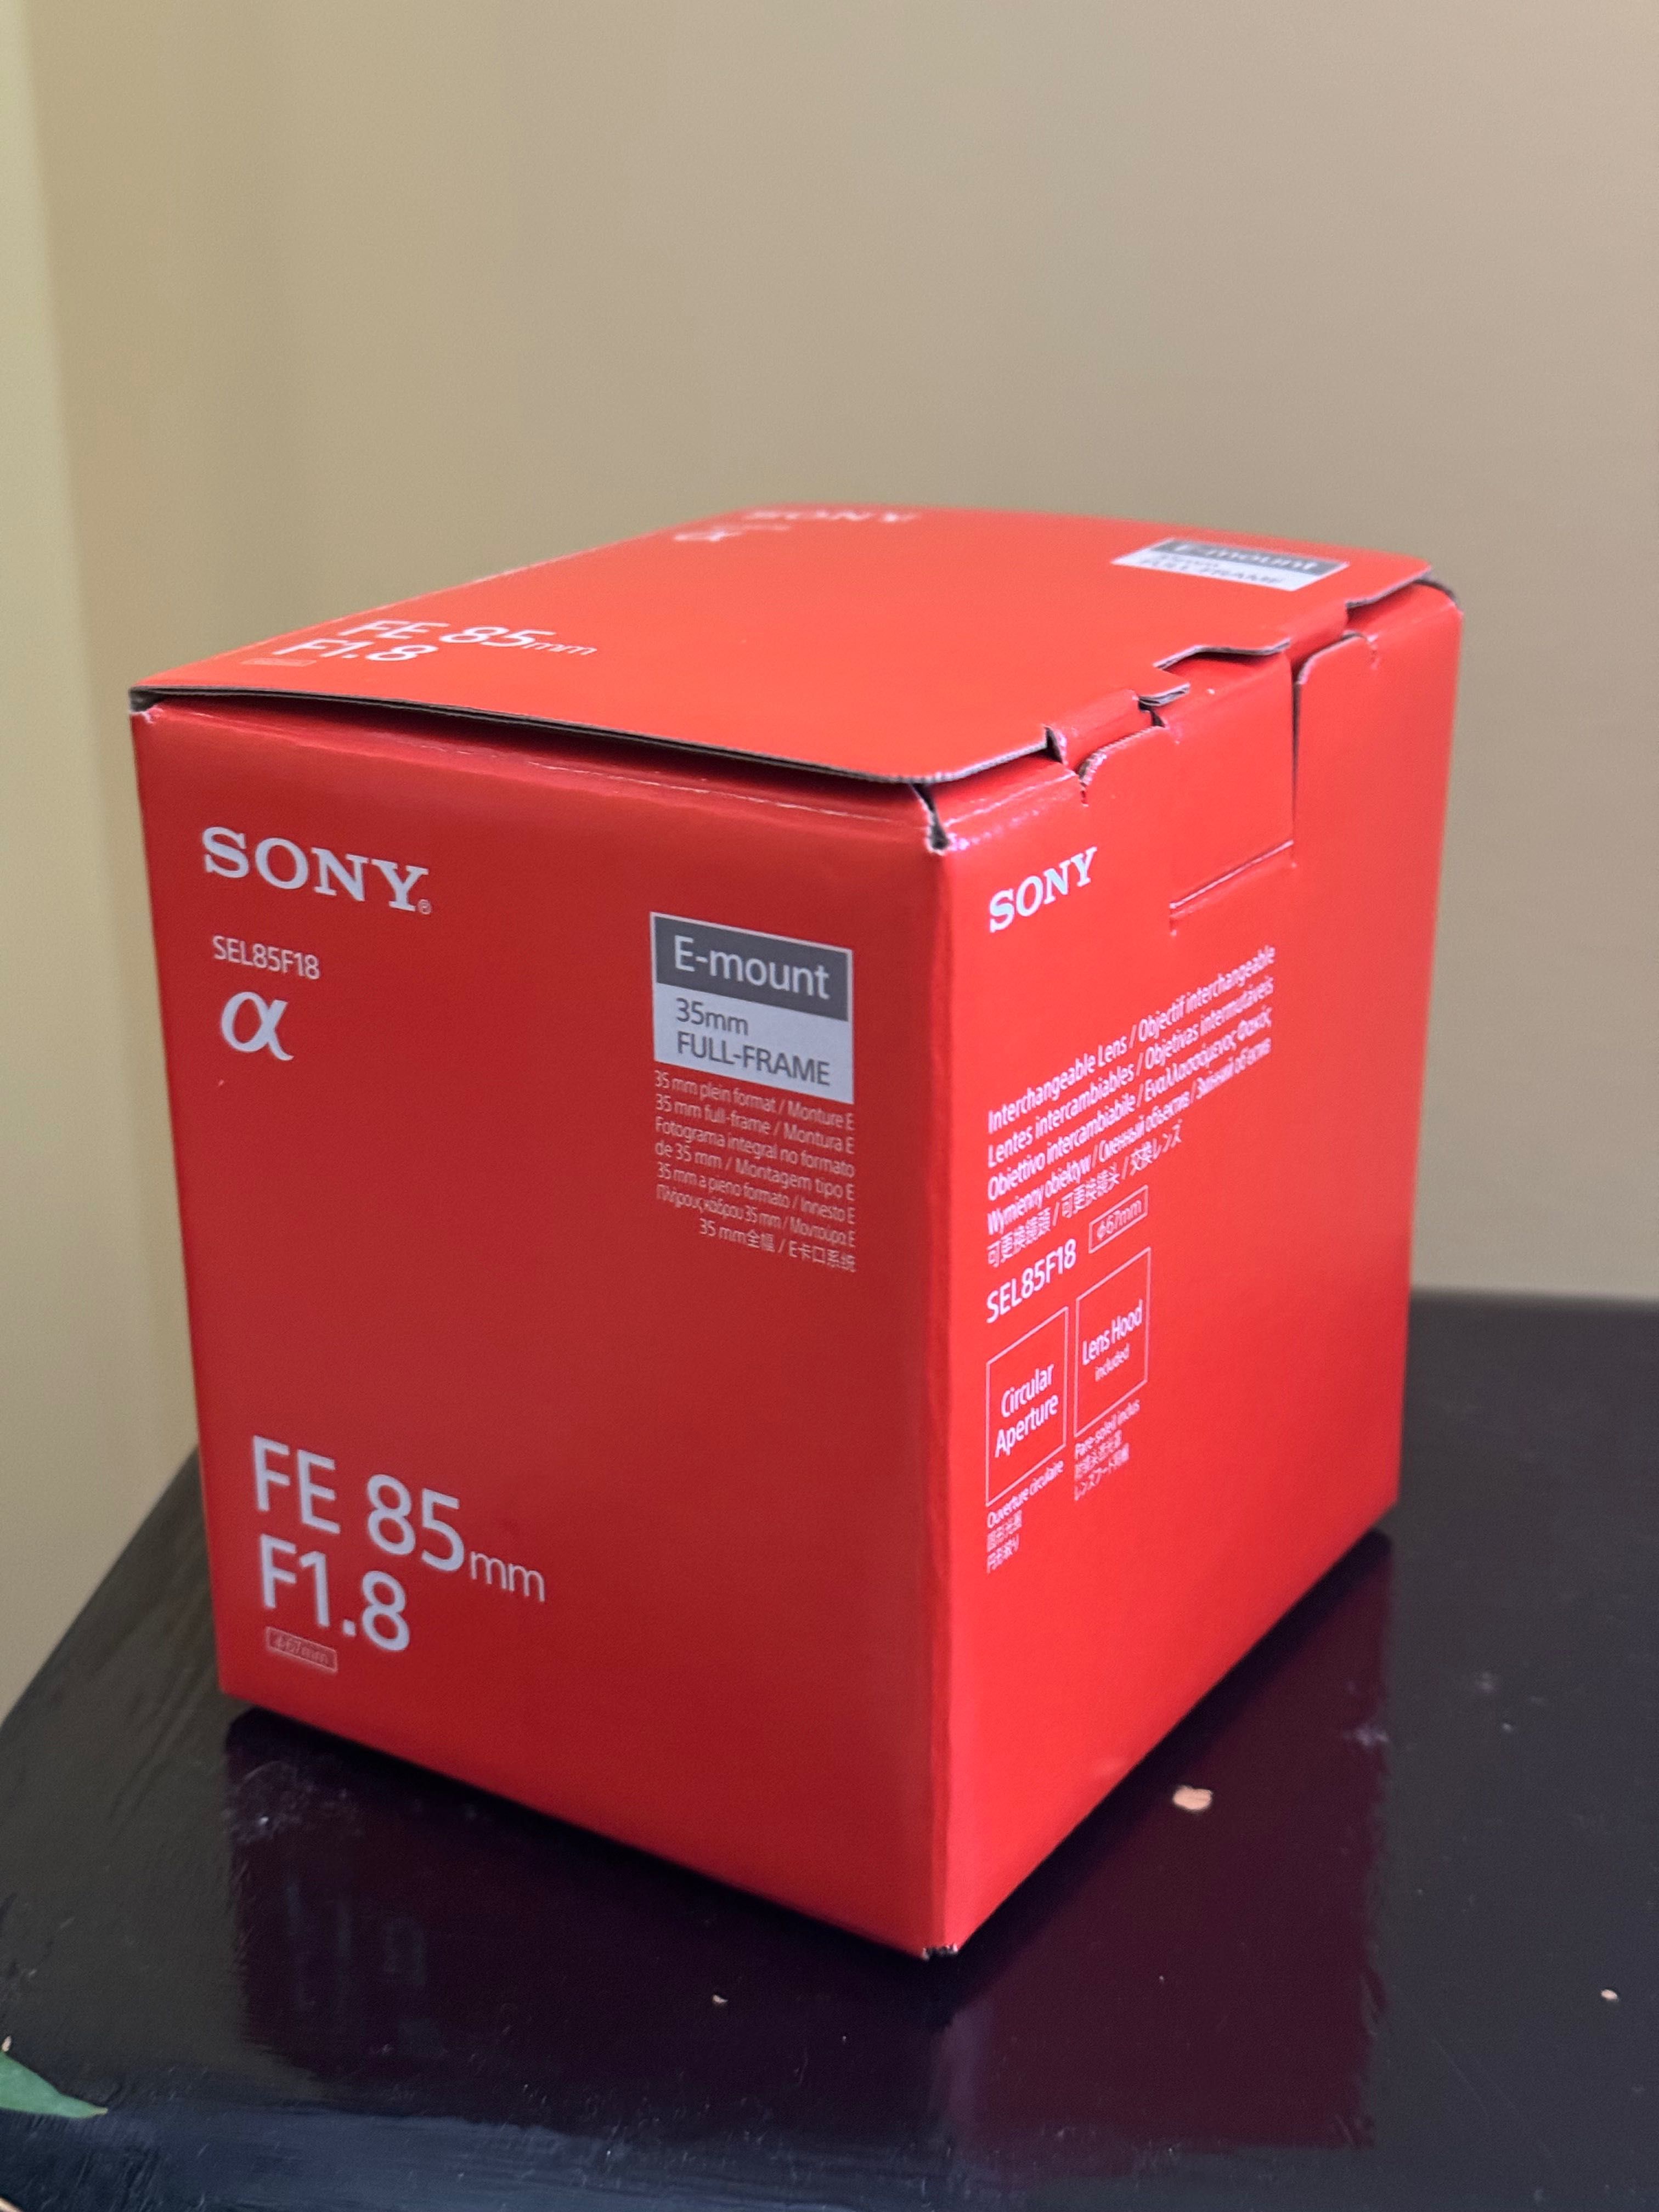 Okazja obiektyw Sony FE 85 mm f/1.8 Nowy